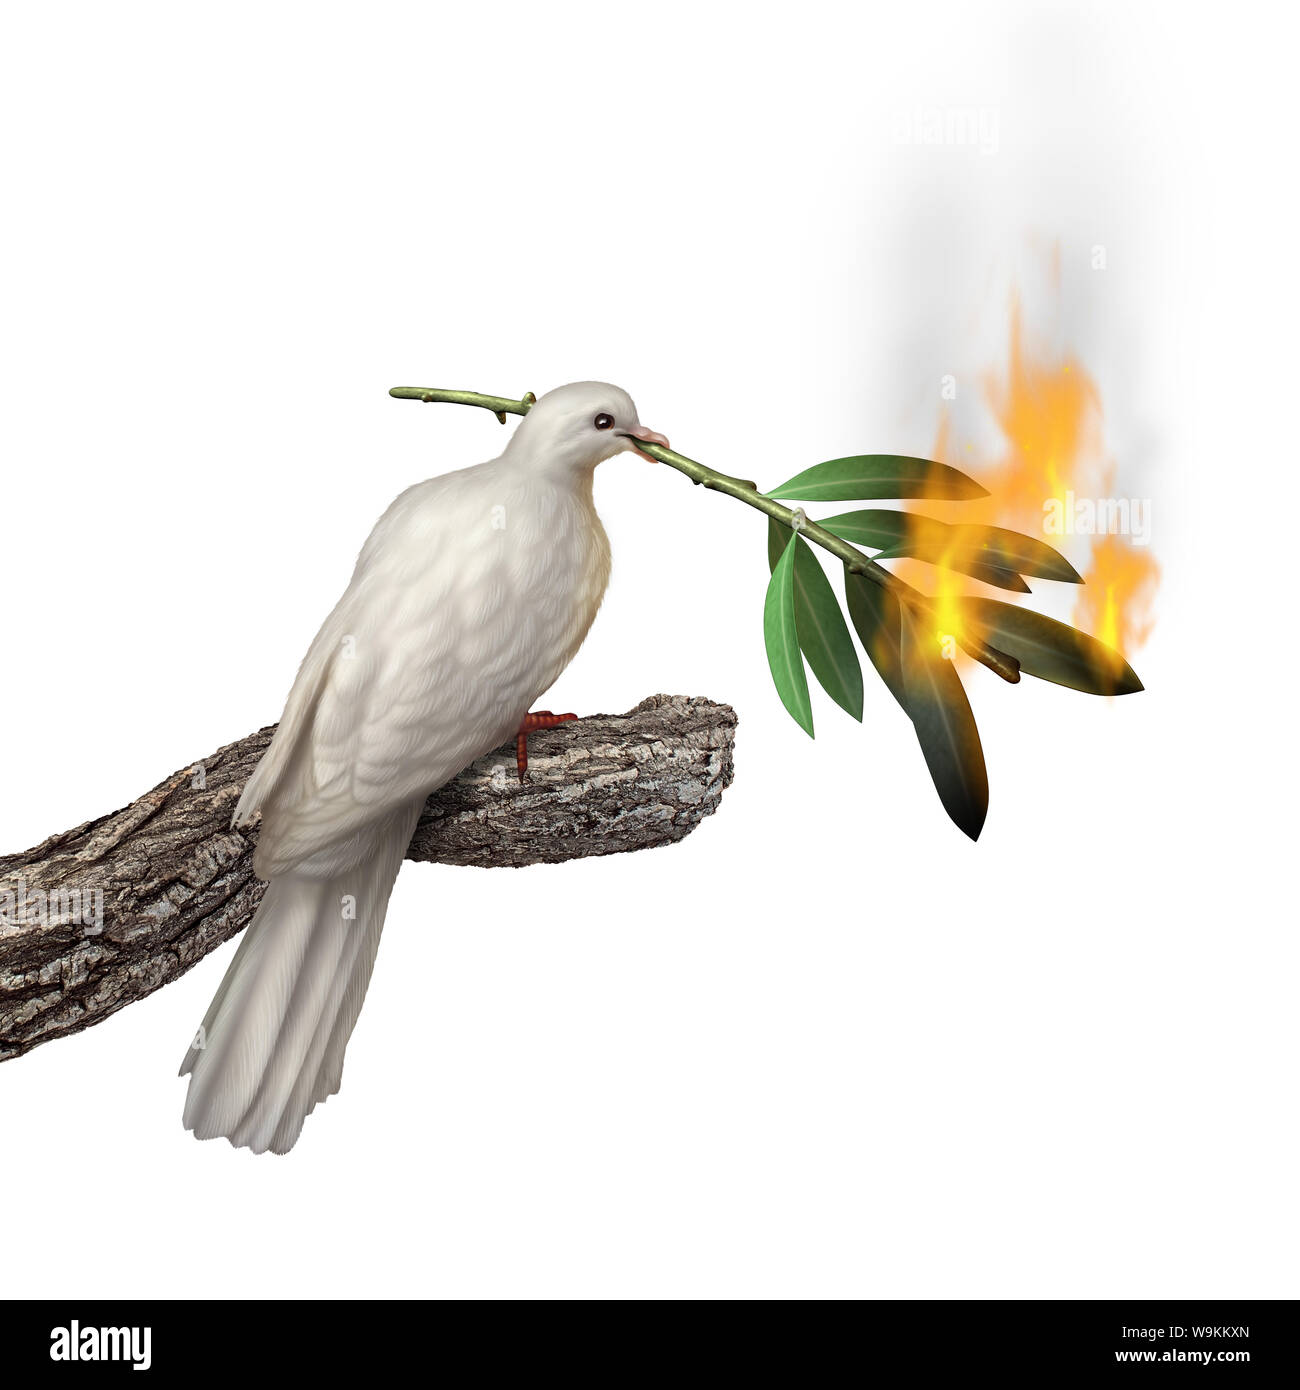 Frieden Konzept, das eine Taube mit einem brennenden Olive Tree Branch als eine Krise im Glauben oder umweltproblem Idee mit 3D-Illustration Elemente. Stockfoto